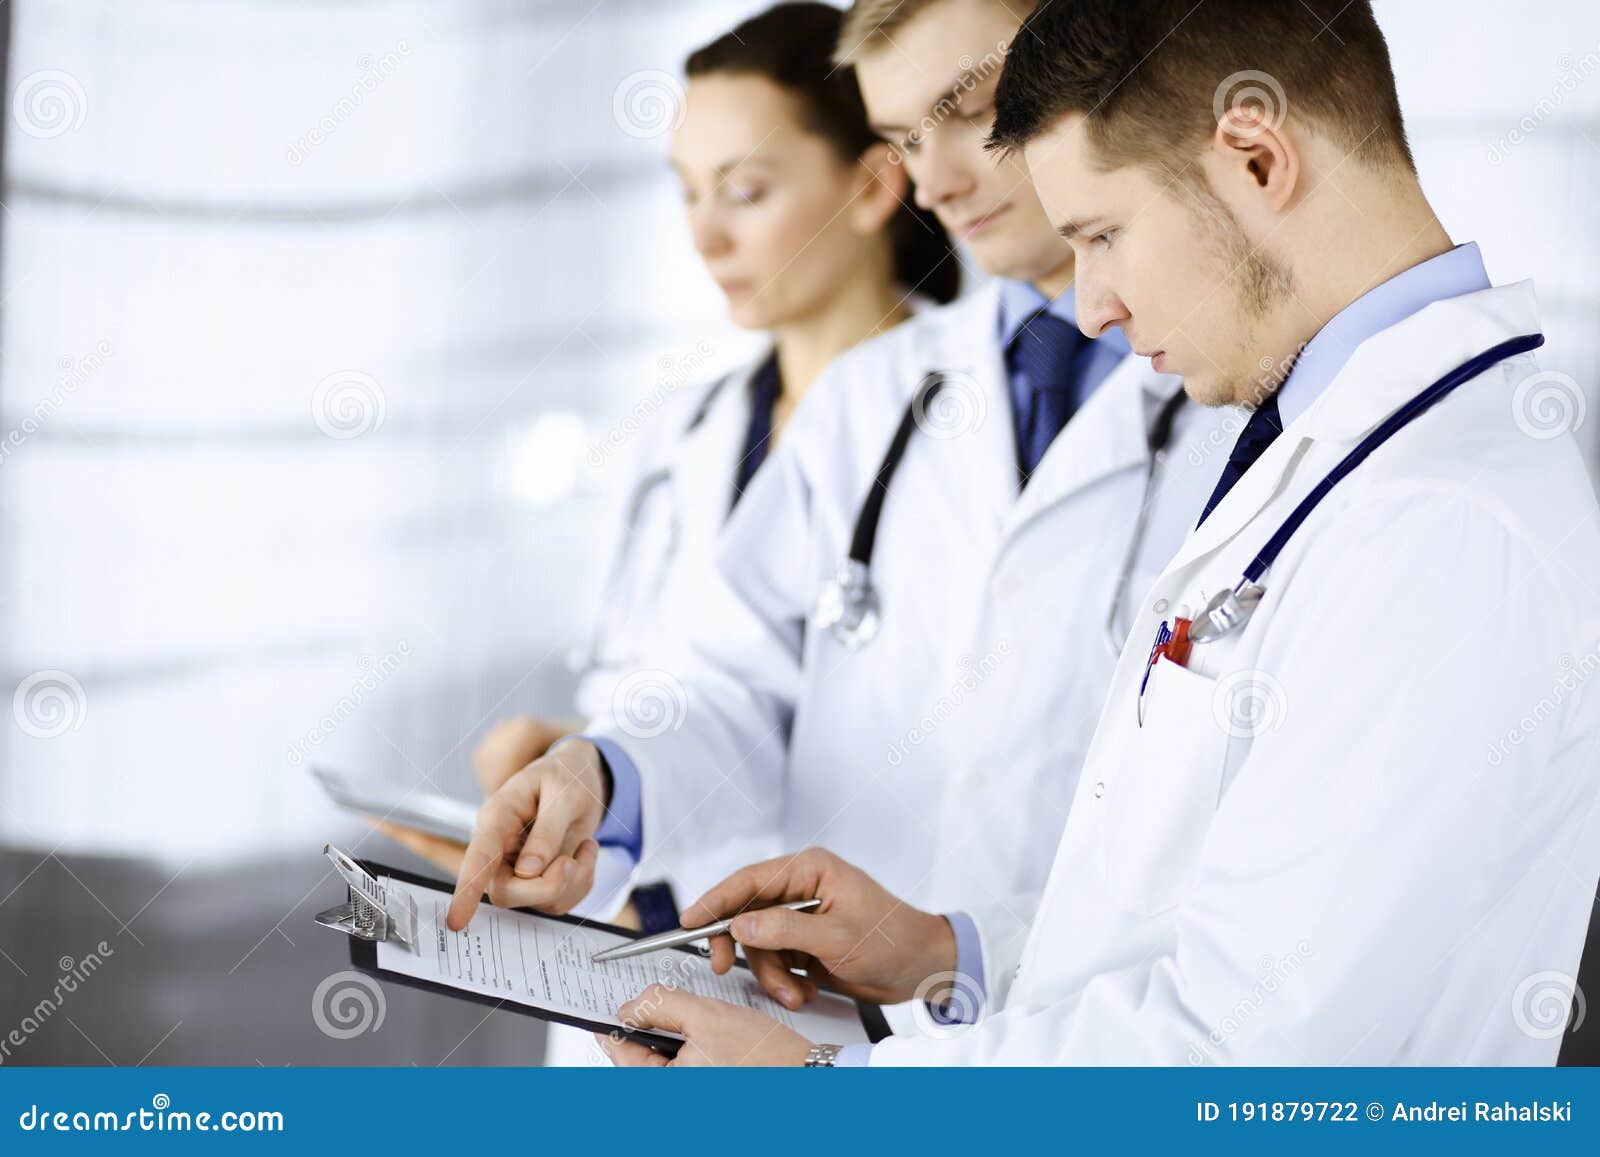 doctors in training diagnostic exam